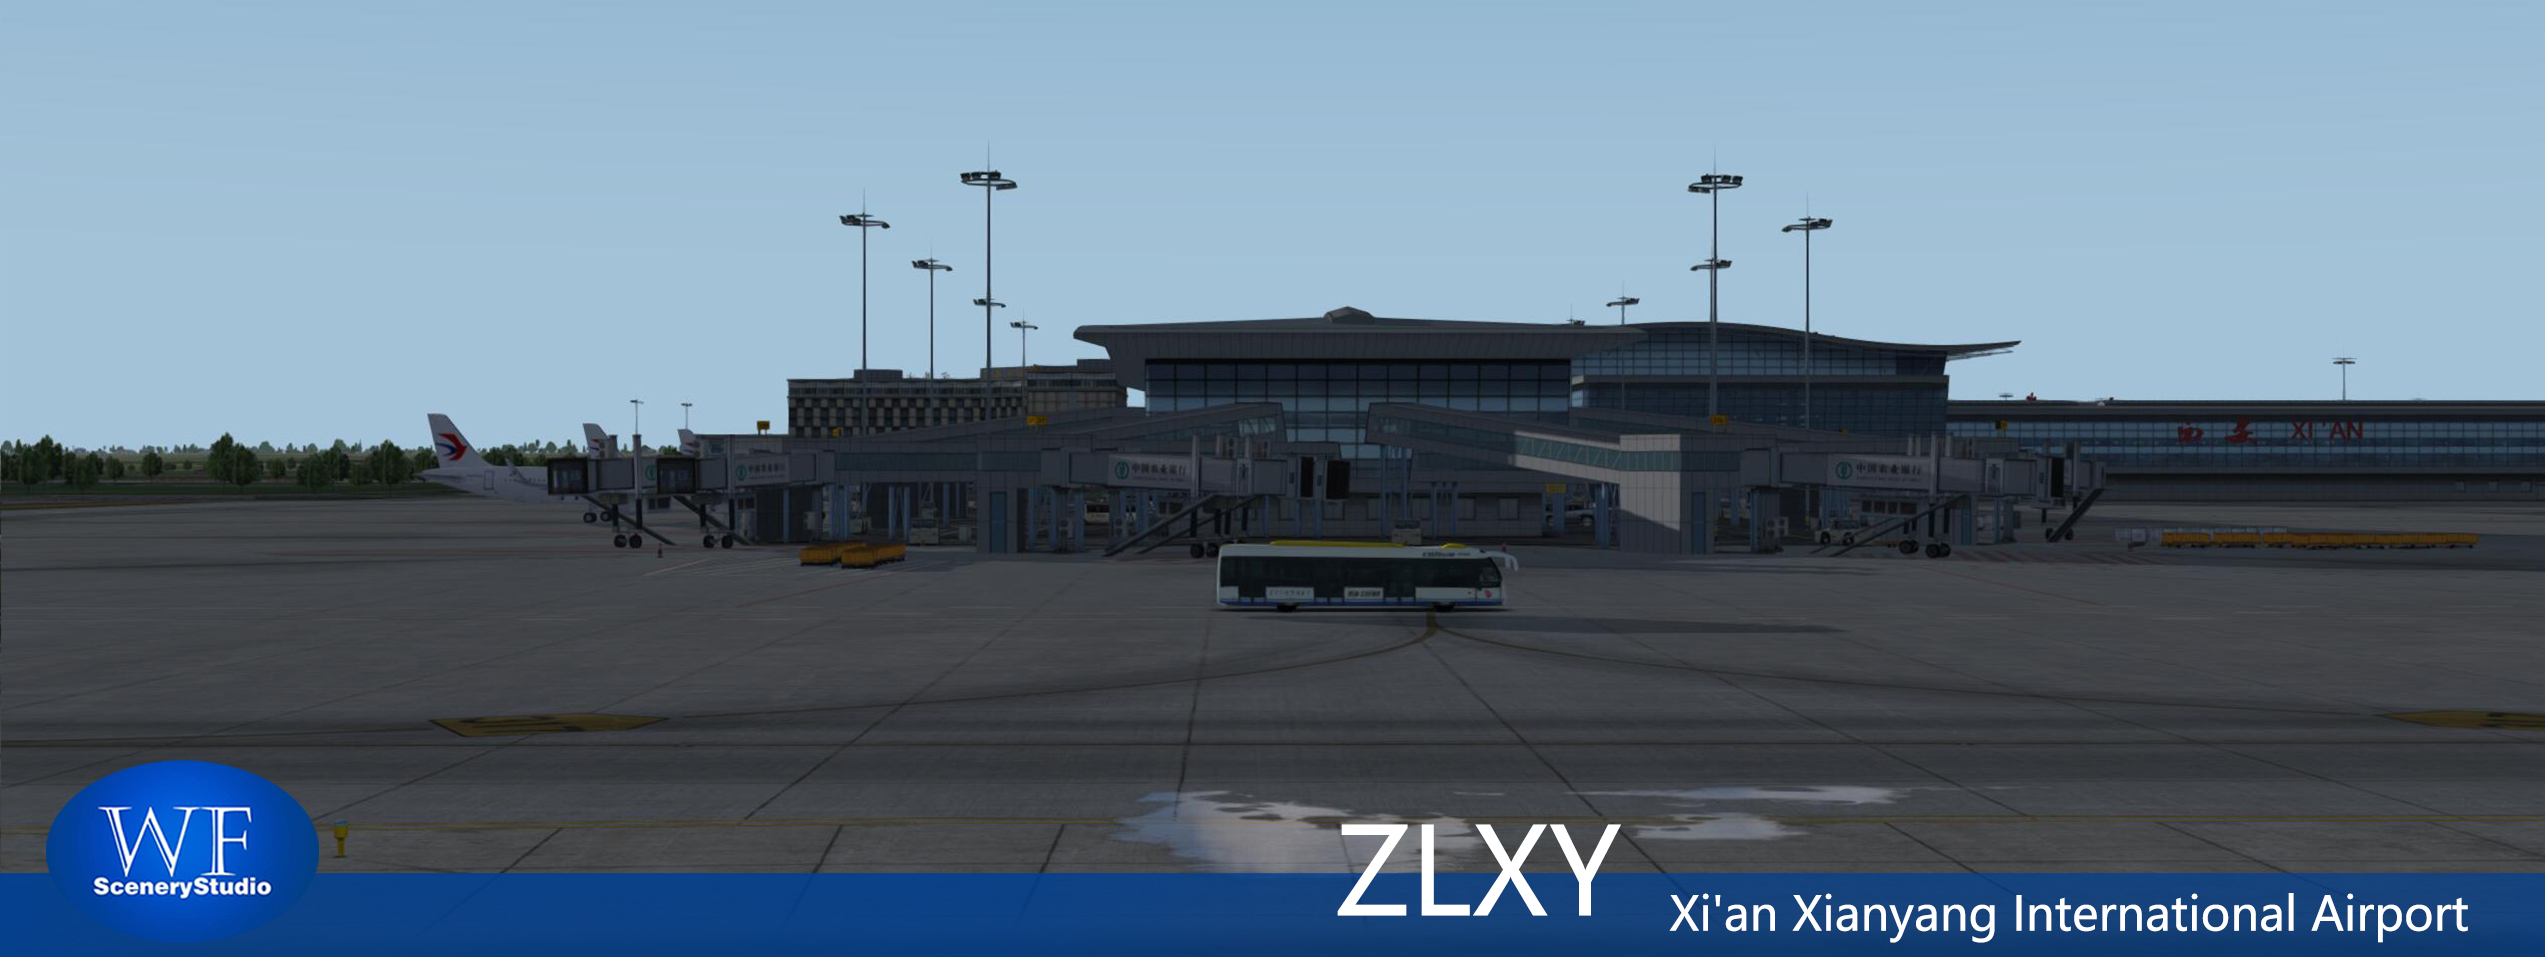 西安咸阳国际机场FSX和P3DV3 版本发布-8281 